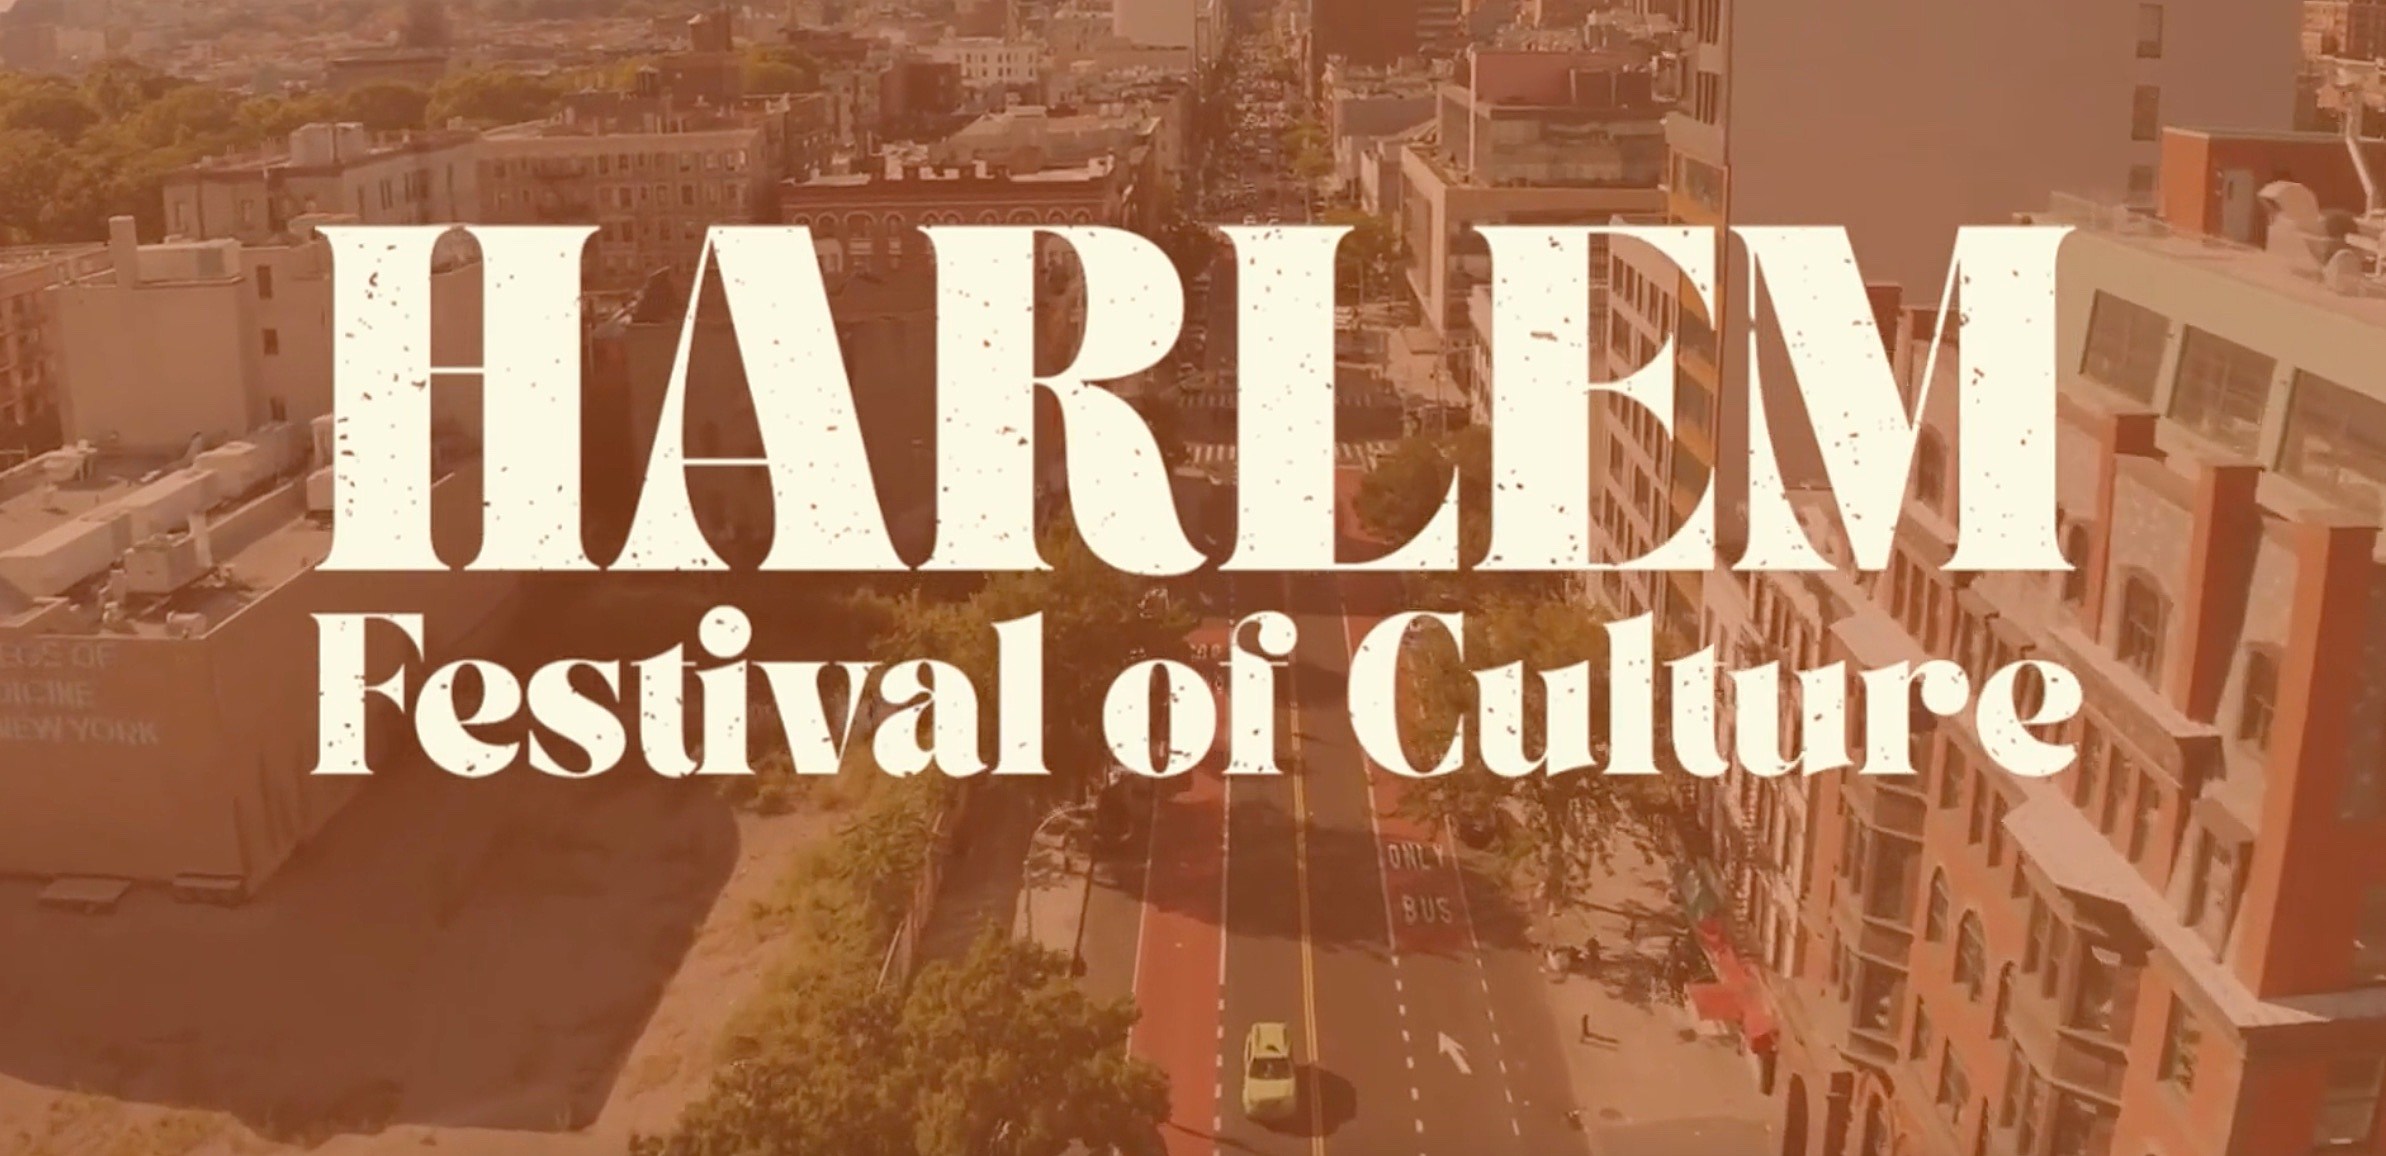 Harlem Festival of Culture Foundation Harlem Tourism Board